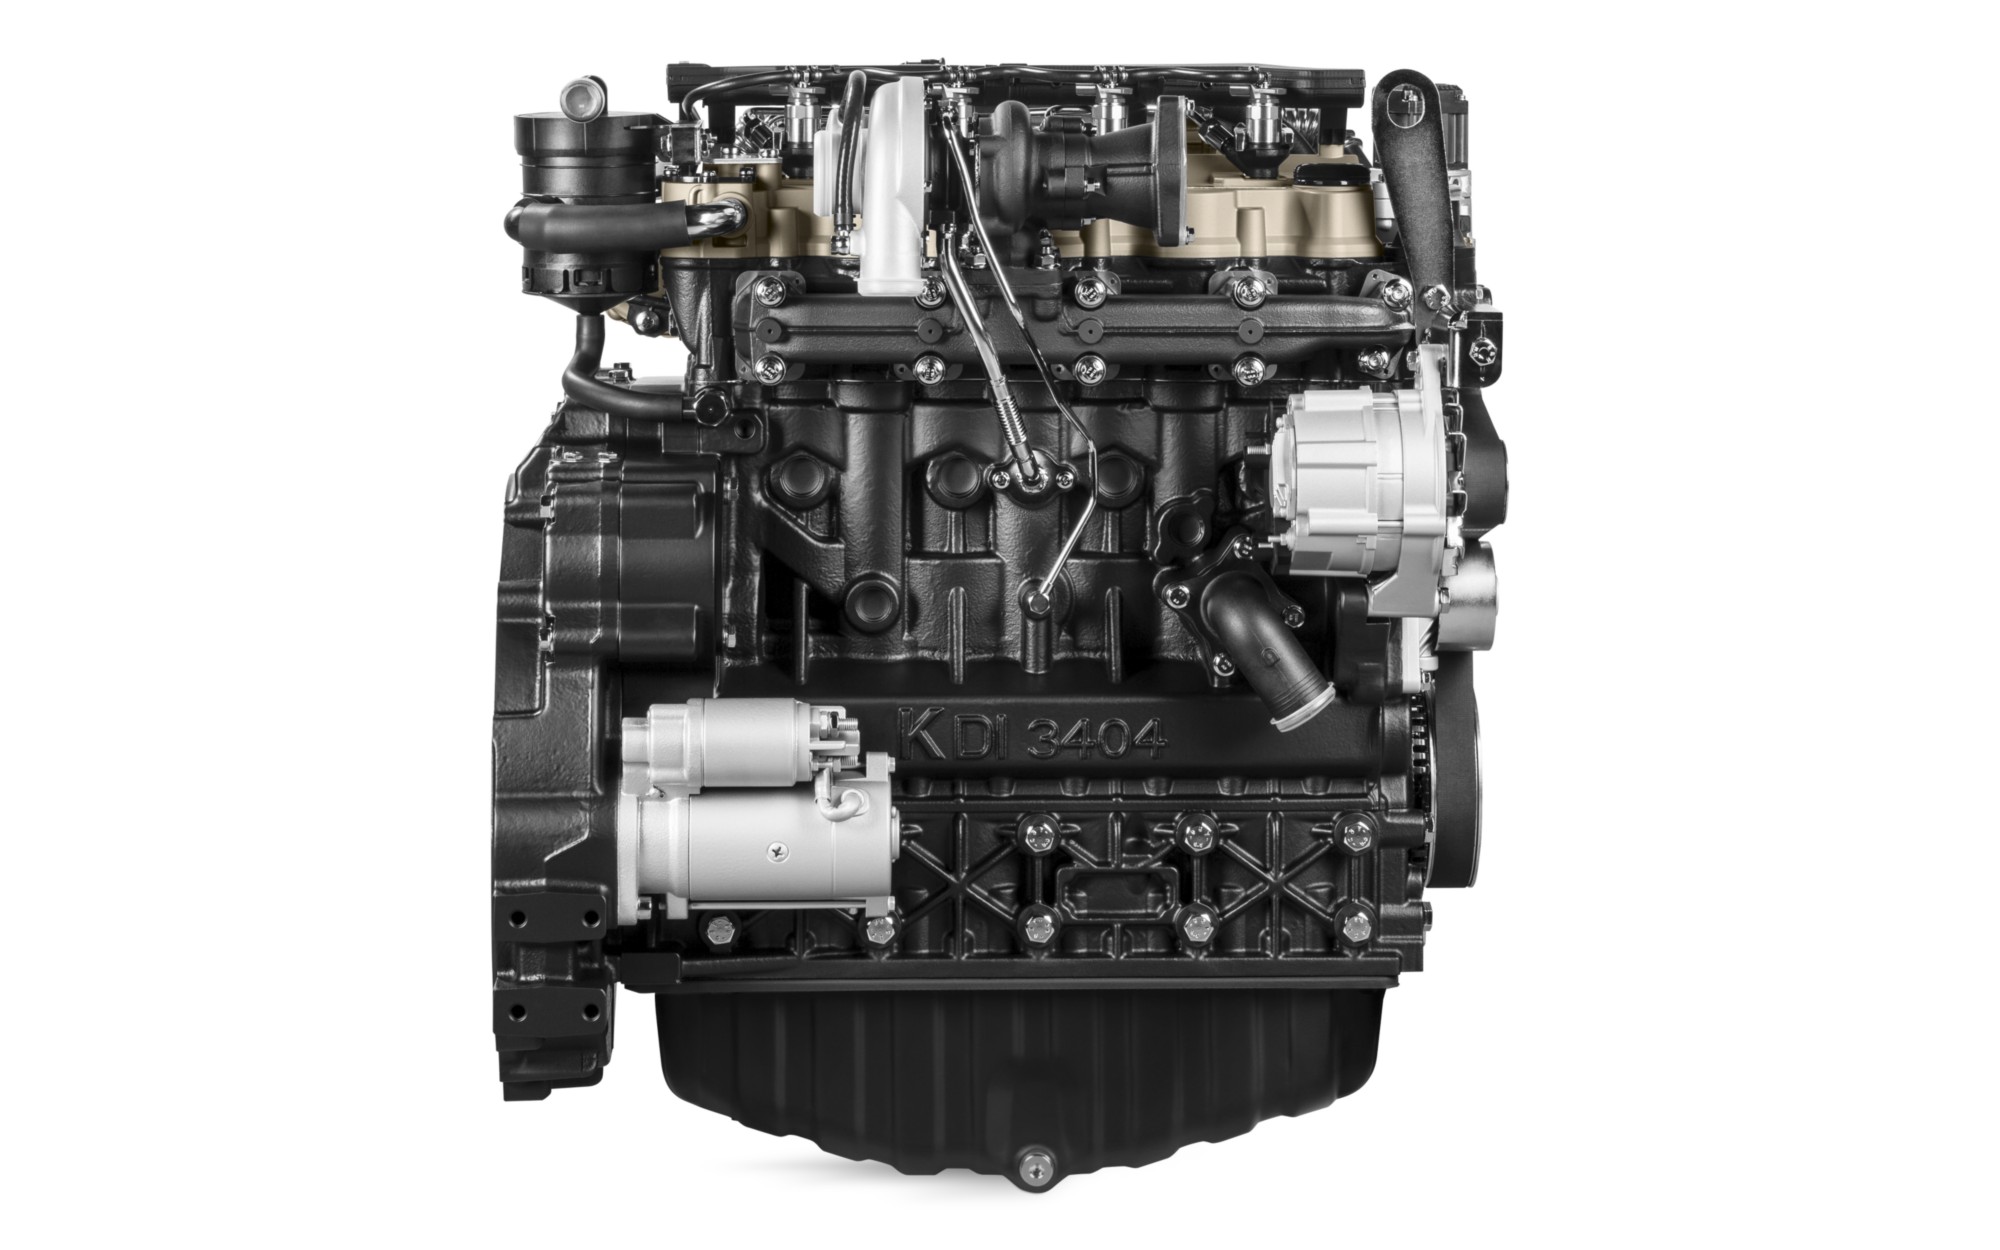 Motor Diesel Kohler KDI 3404TCR